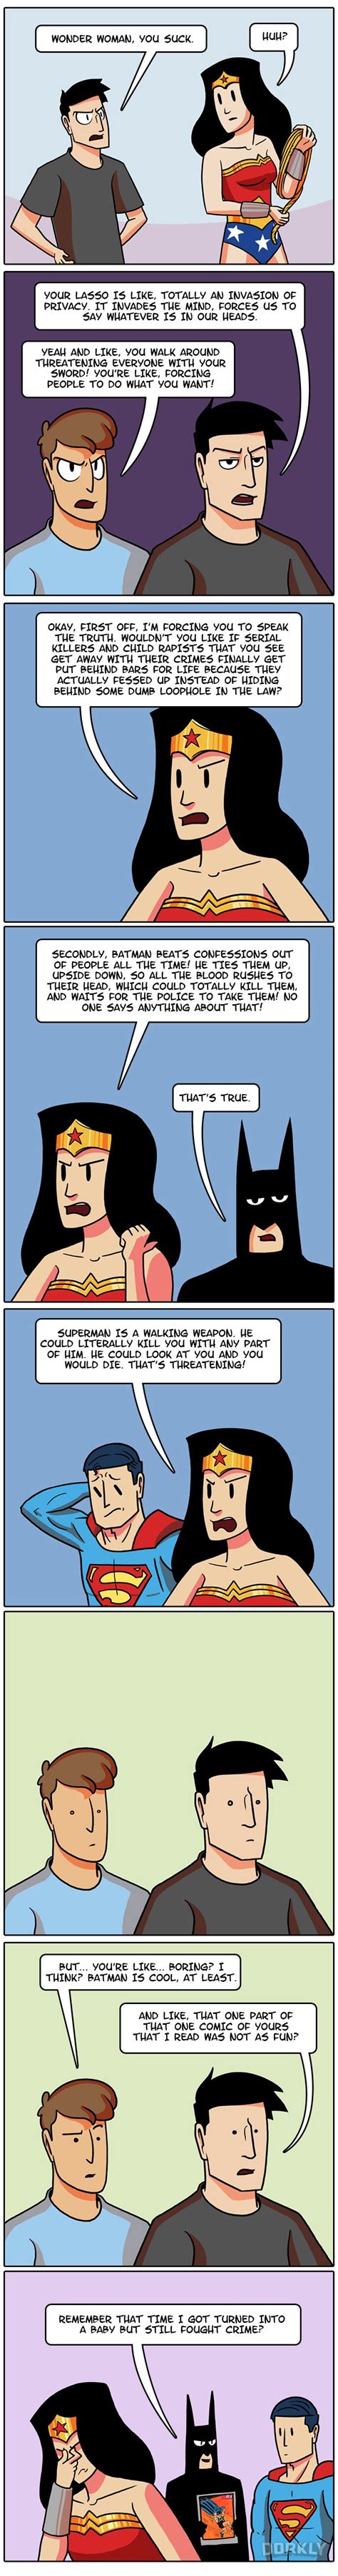 Wonder Woman Pictures And Jokes Dc Comics Fandoms